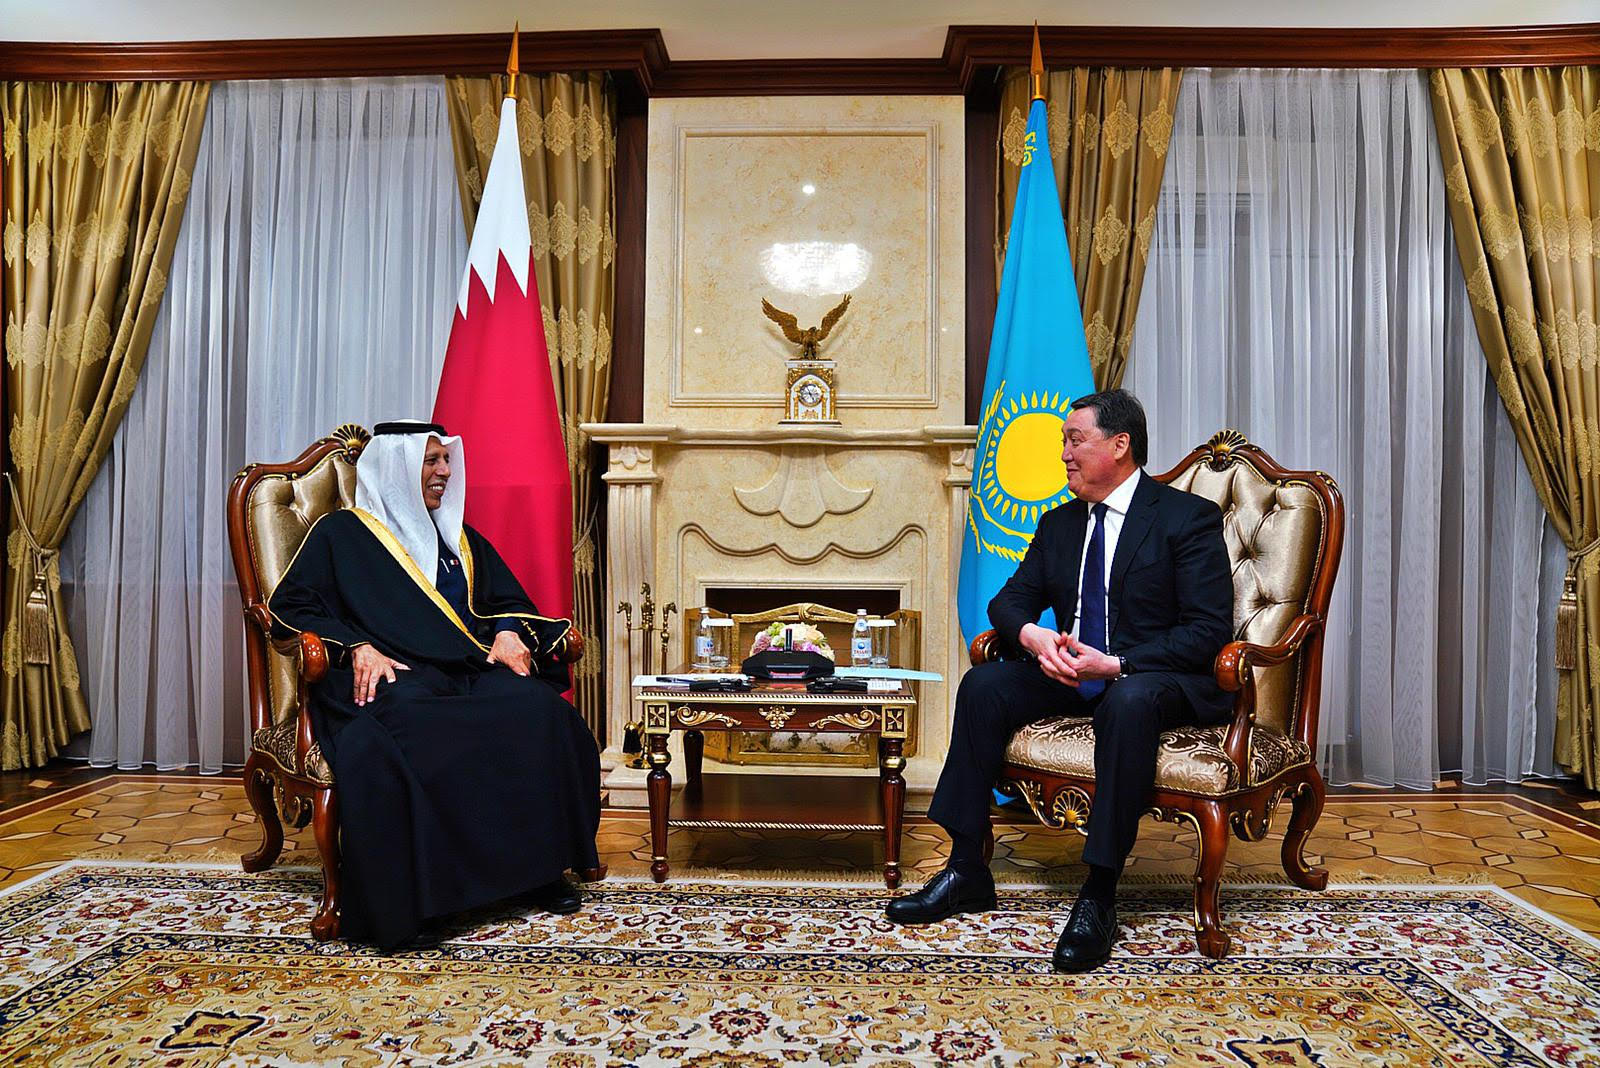  رئيس مجلس الشورى يجتمع مع رئيس وزراء كازاخستان